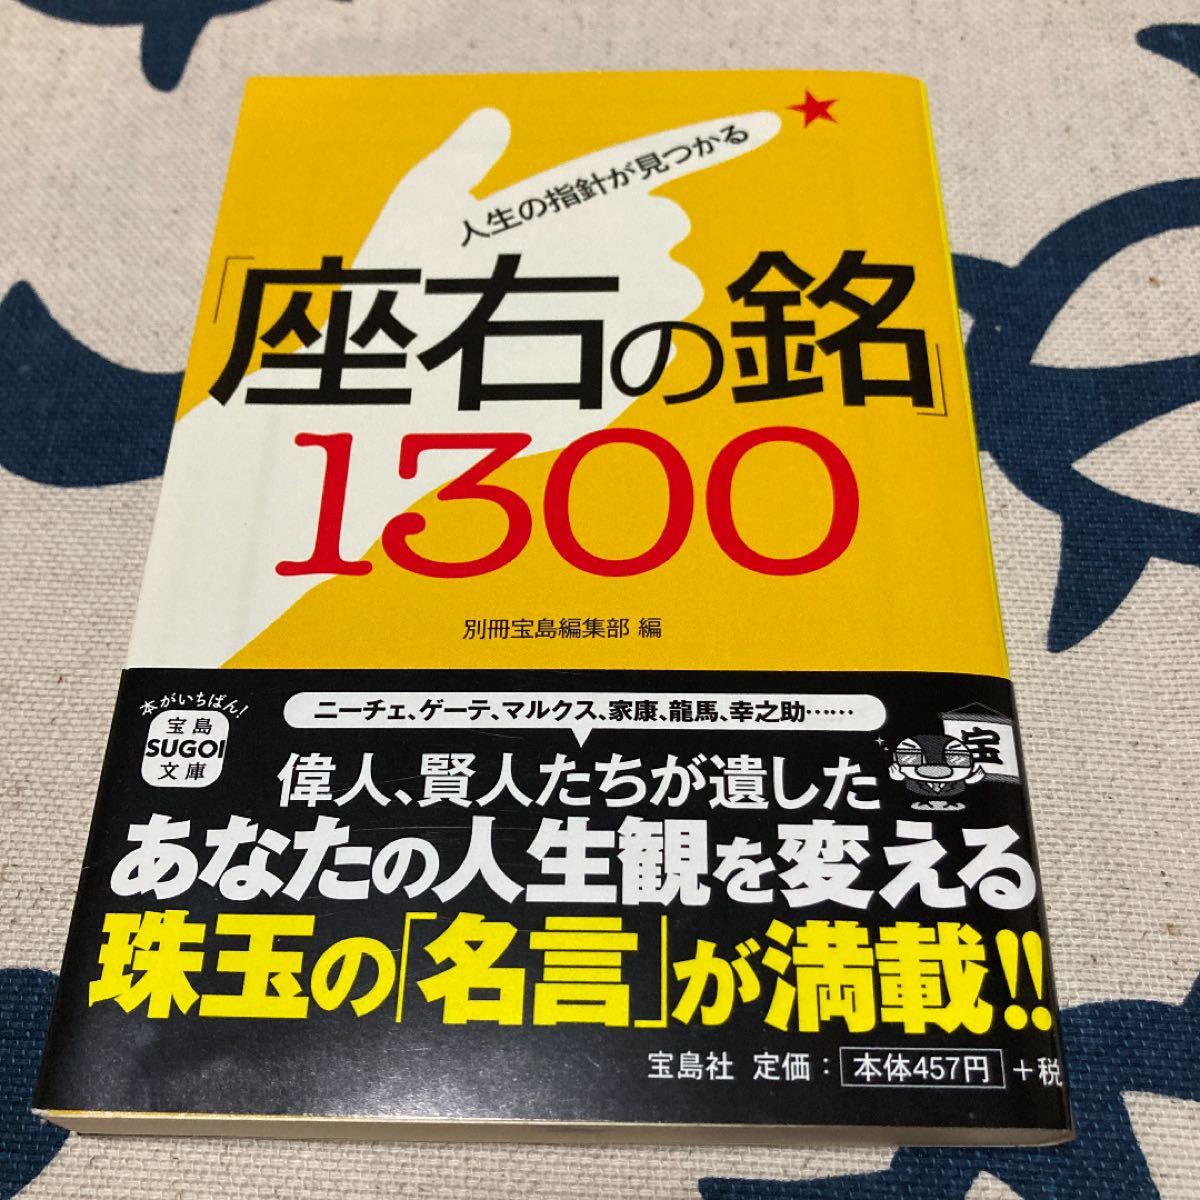 人生の指針が見つかる「座右の銘」1300 (宝島SUGOI文庫)